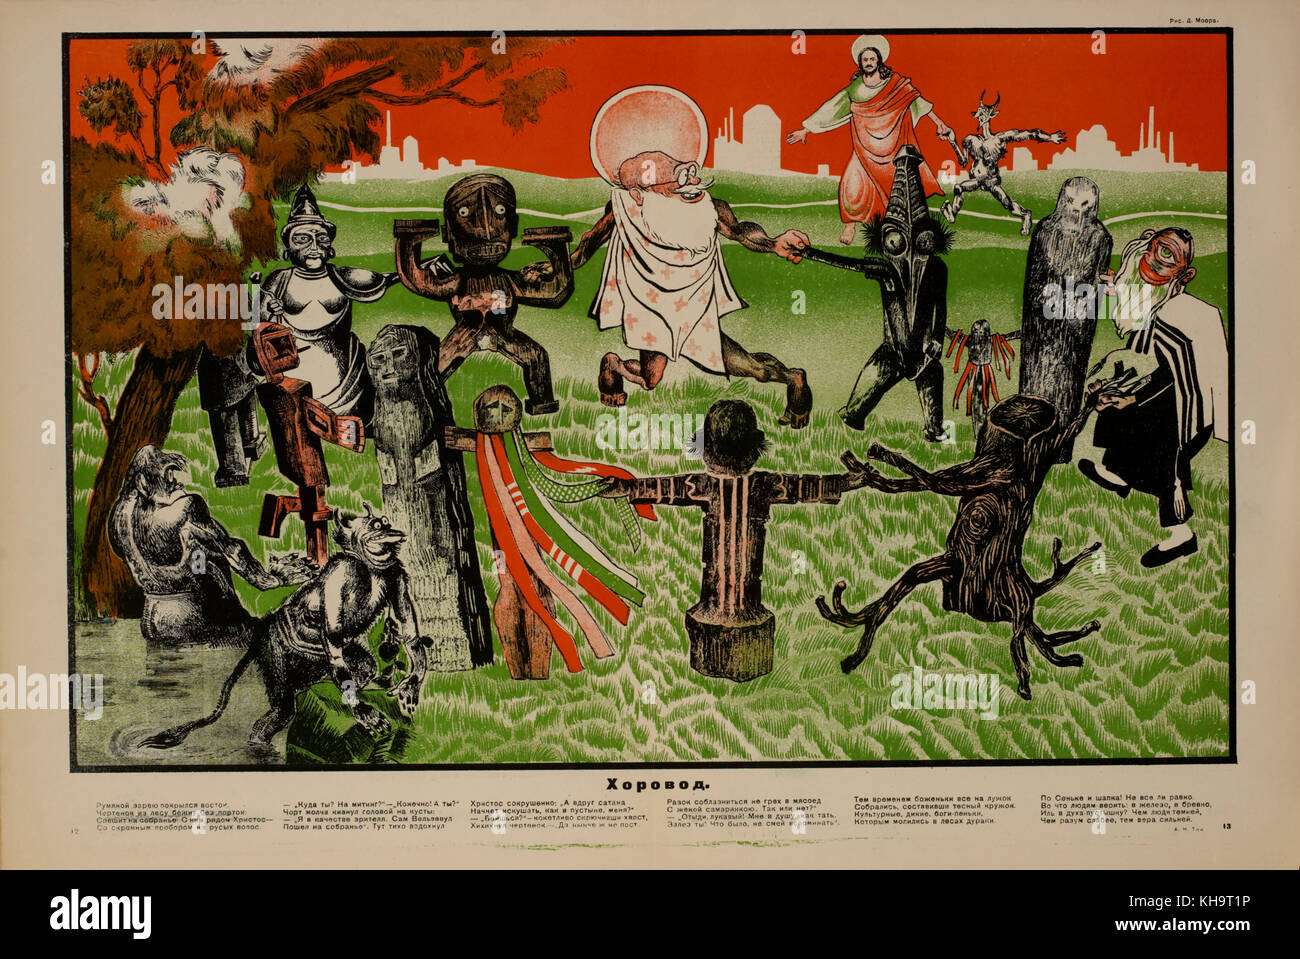 Anti-religione poster di propaganda, bezbozhnik u stanka magazine, illustrazione di Dmitry moor, Russia, 1924 Foto Stock